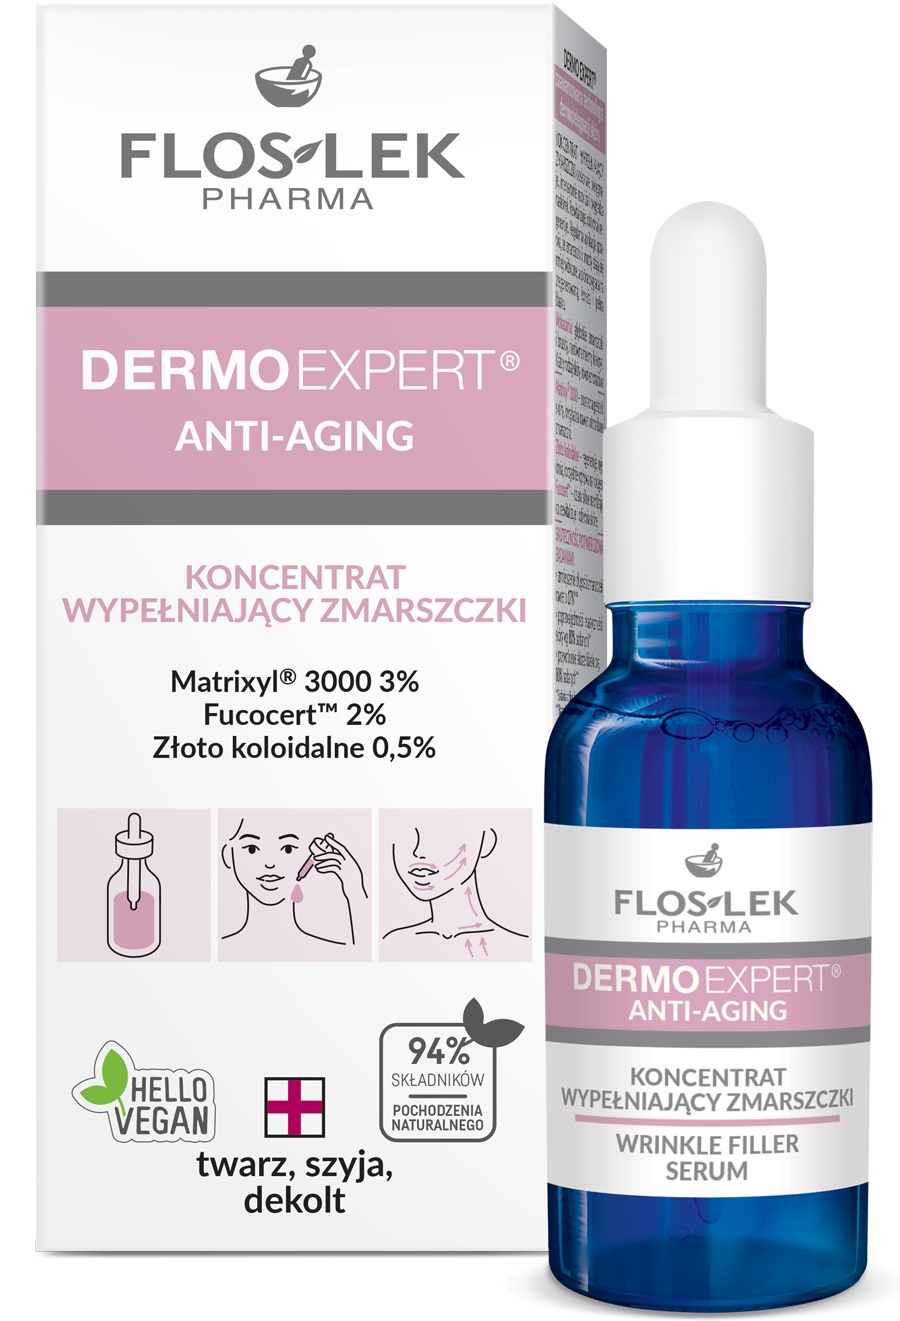 Floslek Dermo Expert Anti-Aging Wrinkle Filler Serum ingredients ...